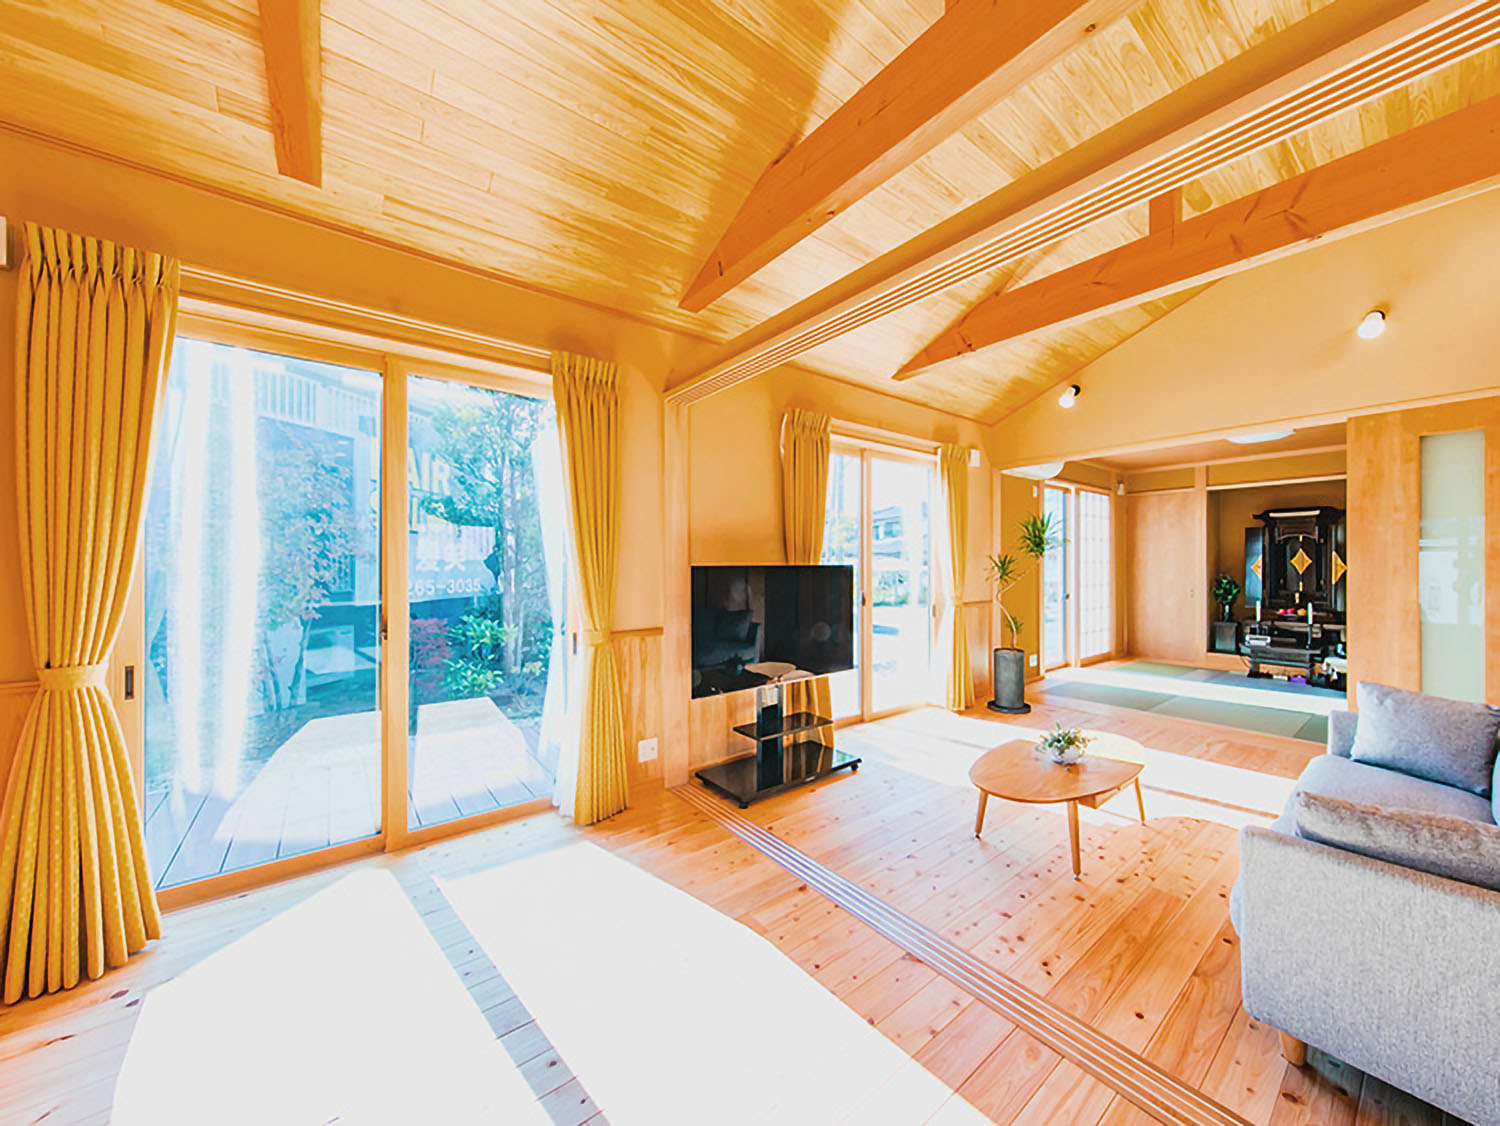 3部屋をつないだ空間は日当たりや通気性も抜群。檜無垢材を自然塗料で仕上げた床板は厚さが3cmを採用。